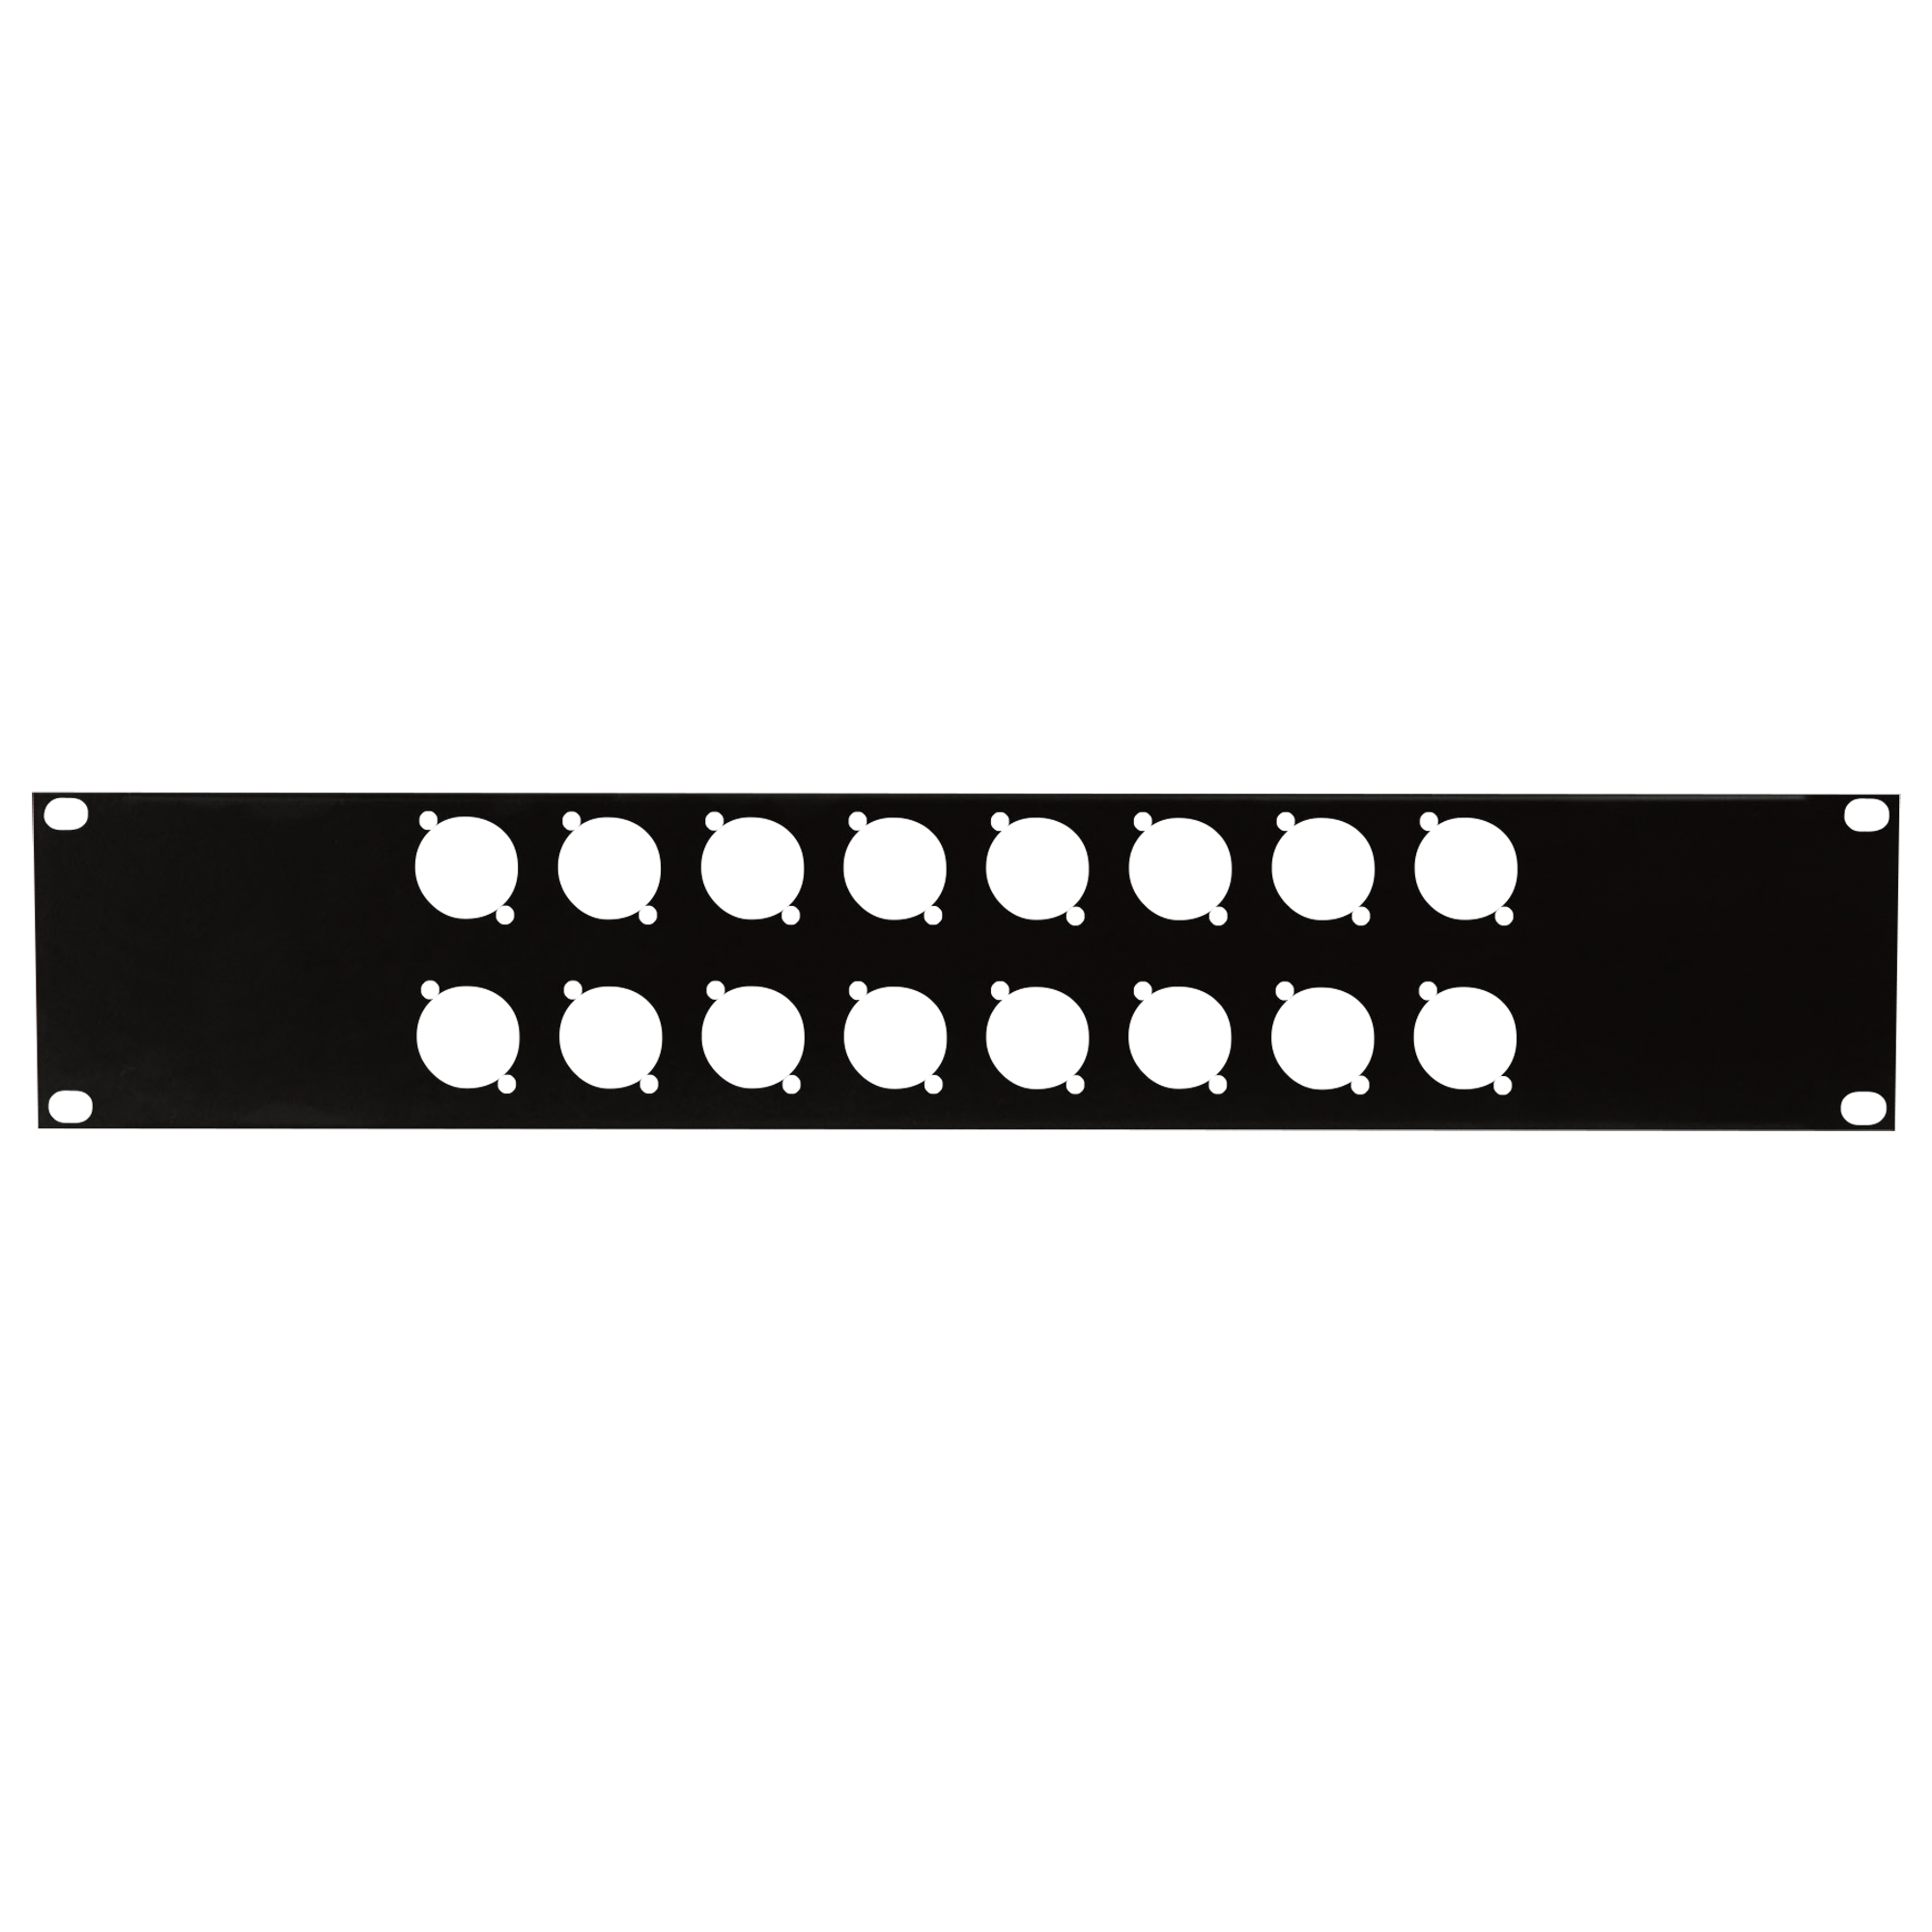 Showgear 19 Inch Connector Panel 2HE, für 16 XLR-Anschlüsse (Größe D)